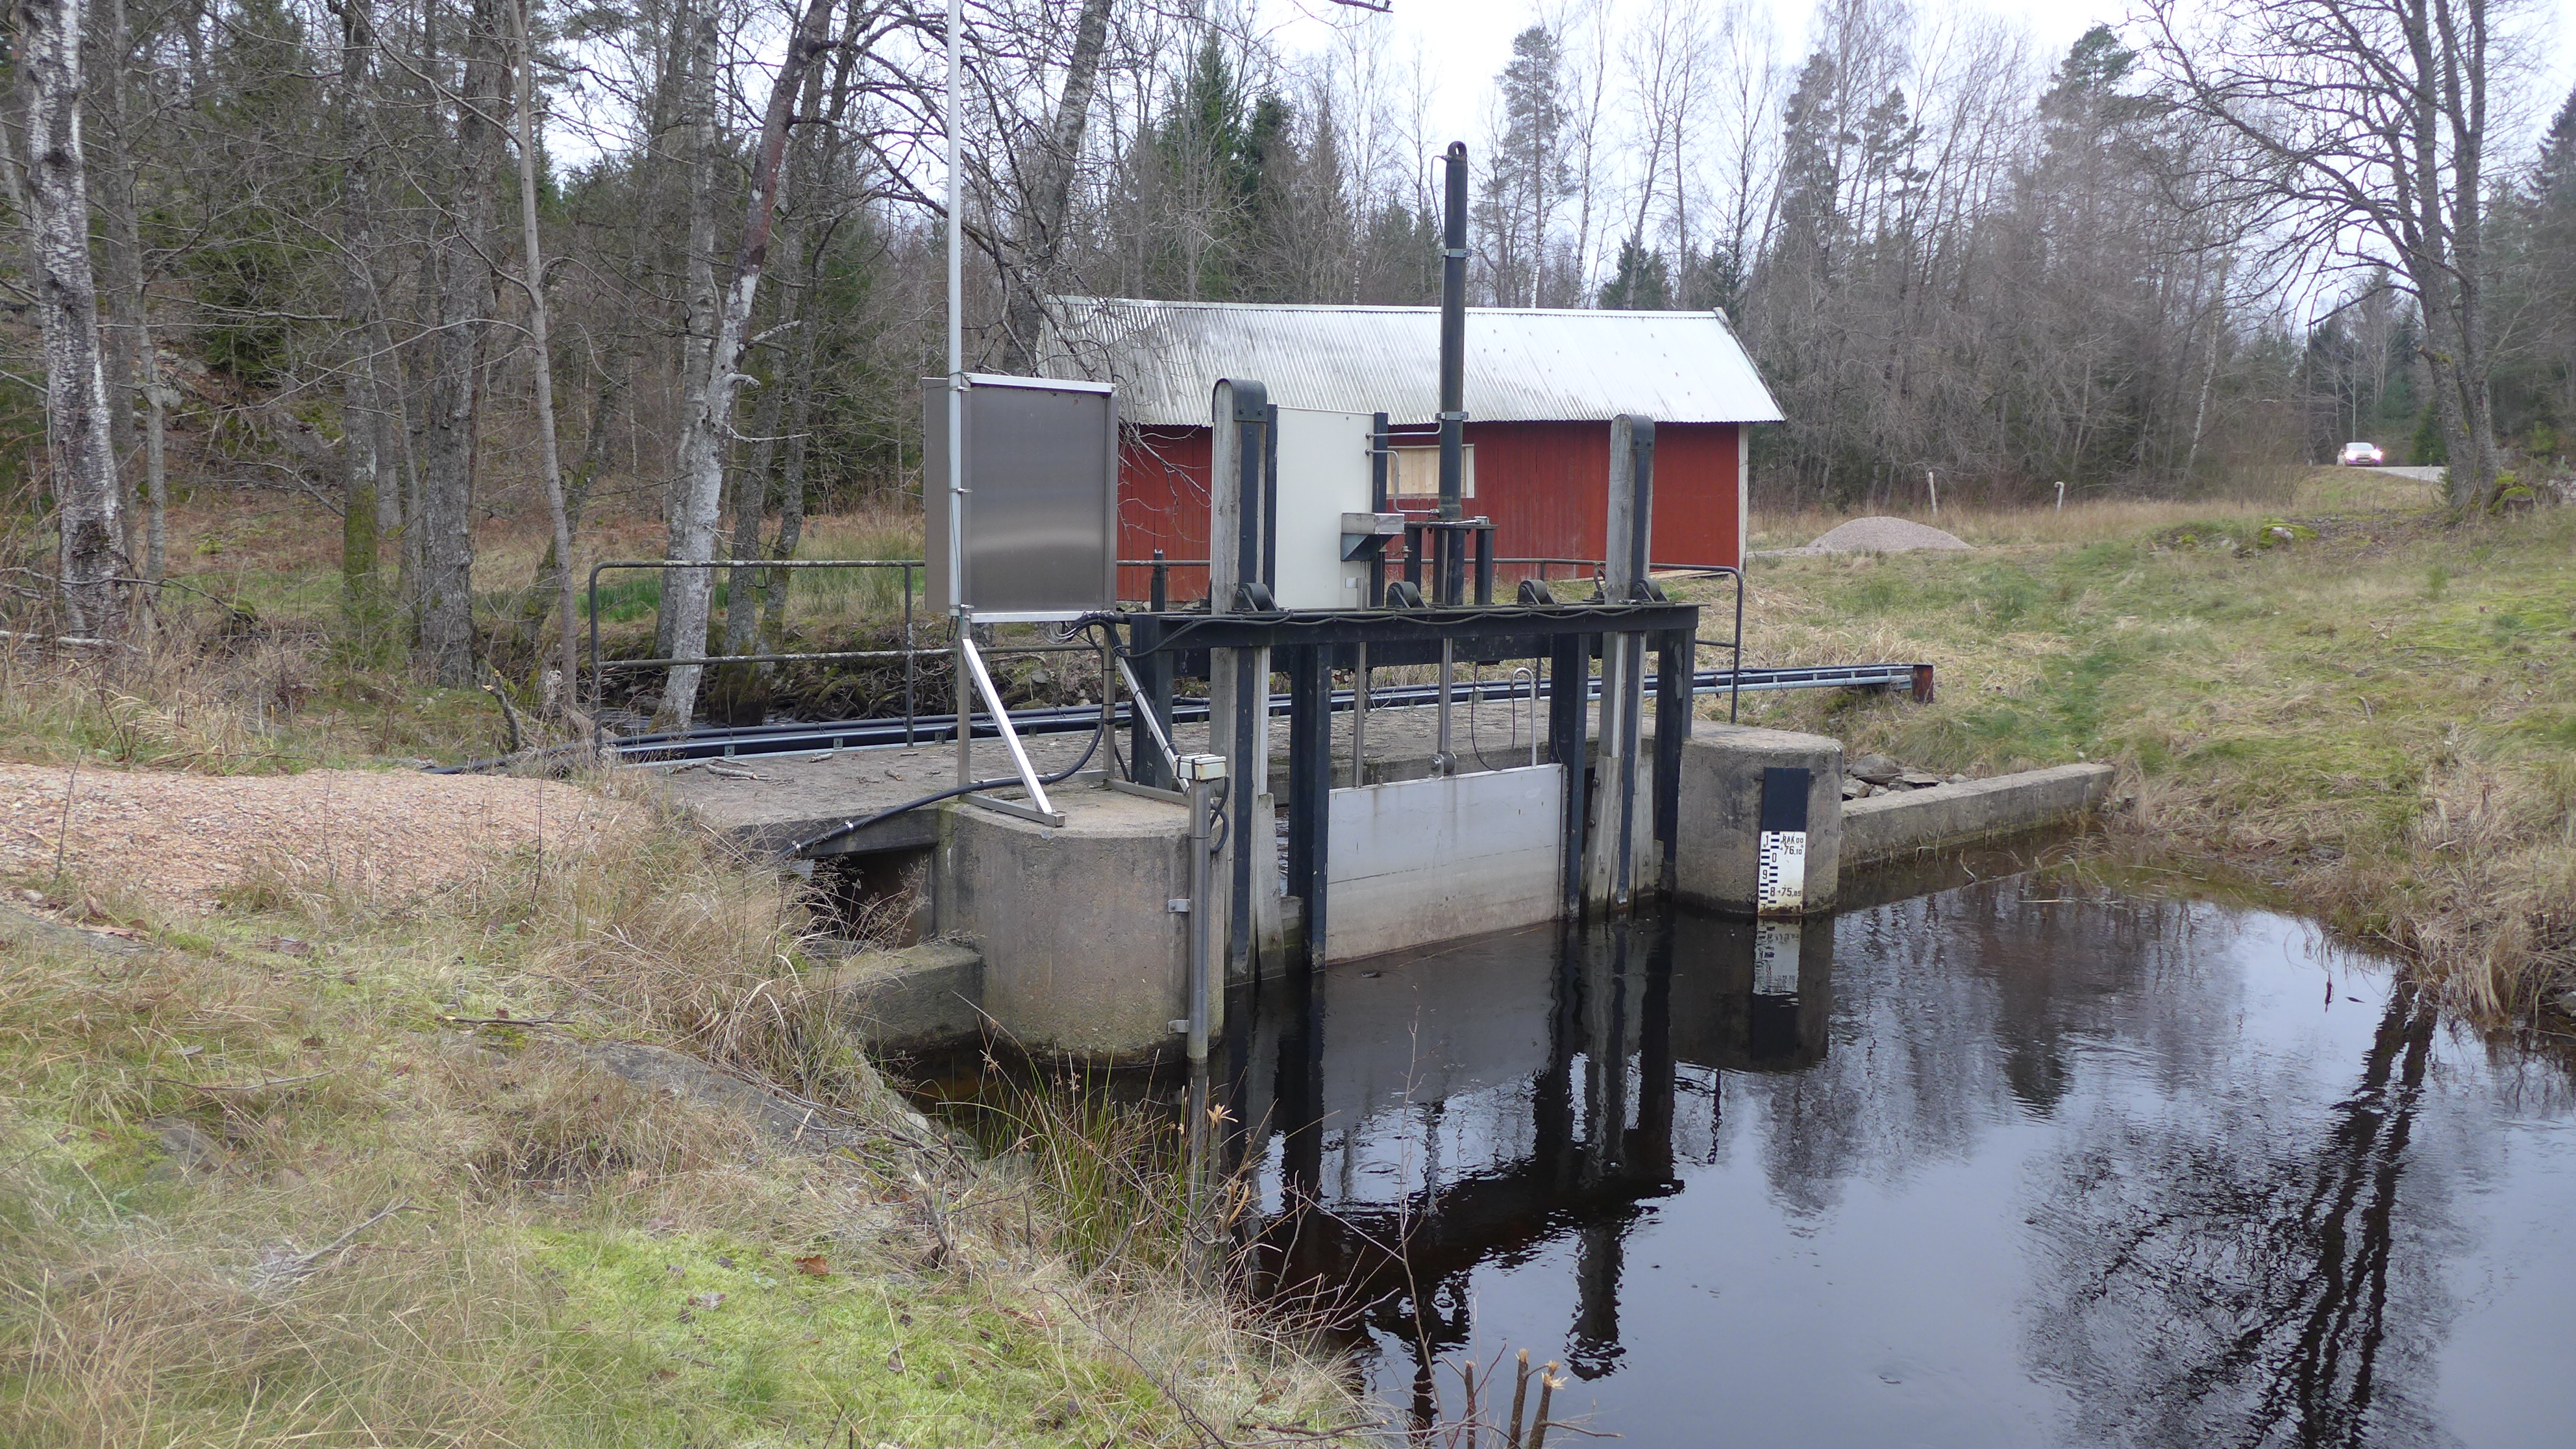 Regleringen av vattennivån sker med hjälp av två dammanläggningar – den övre är en betongdamm i sjön Öresjös utlopp – allt i enlighet med en vattendom. Här finns tre planluckor – två smalare spettluckor av trä och en maskindriven bredare planlucka av stål.